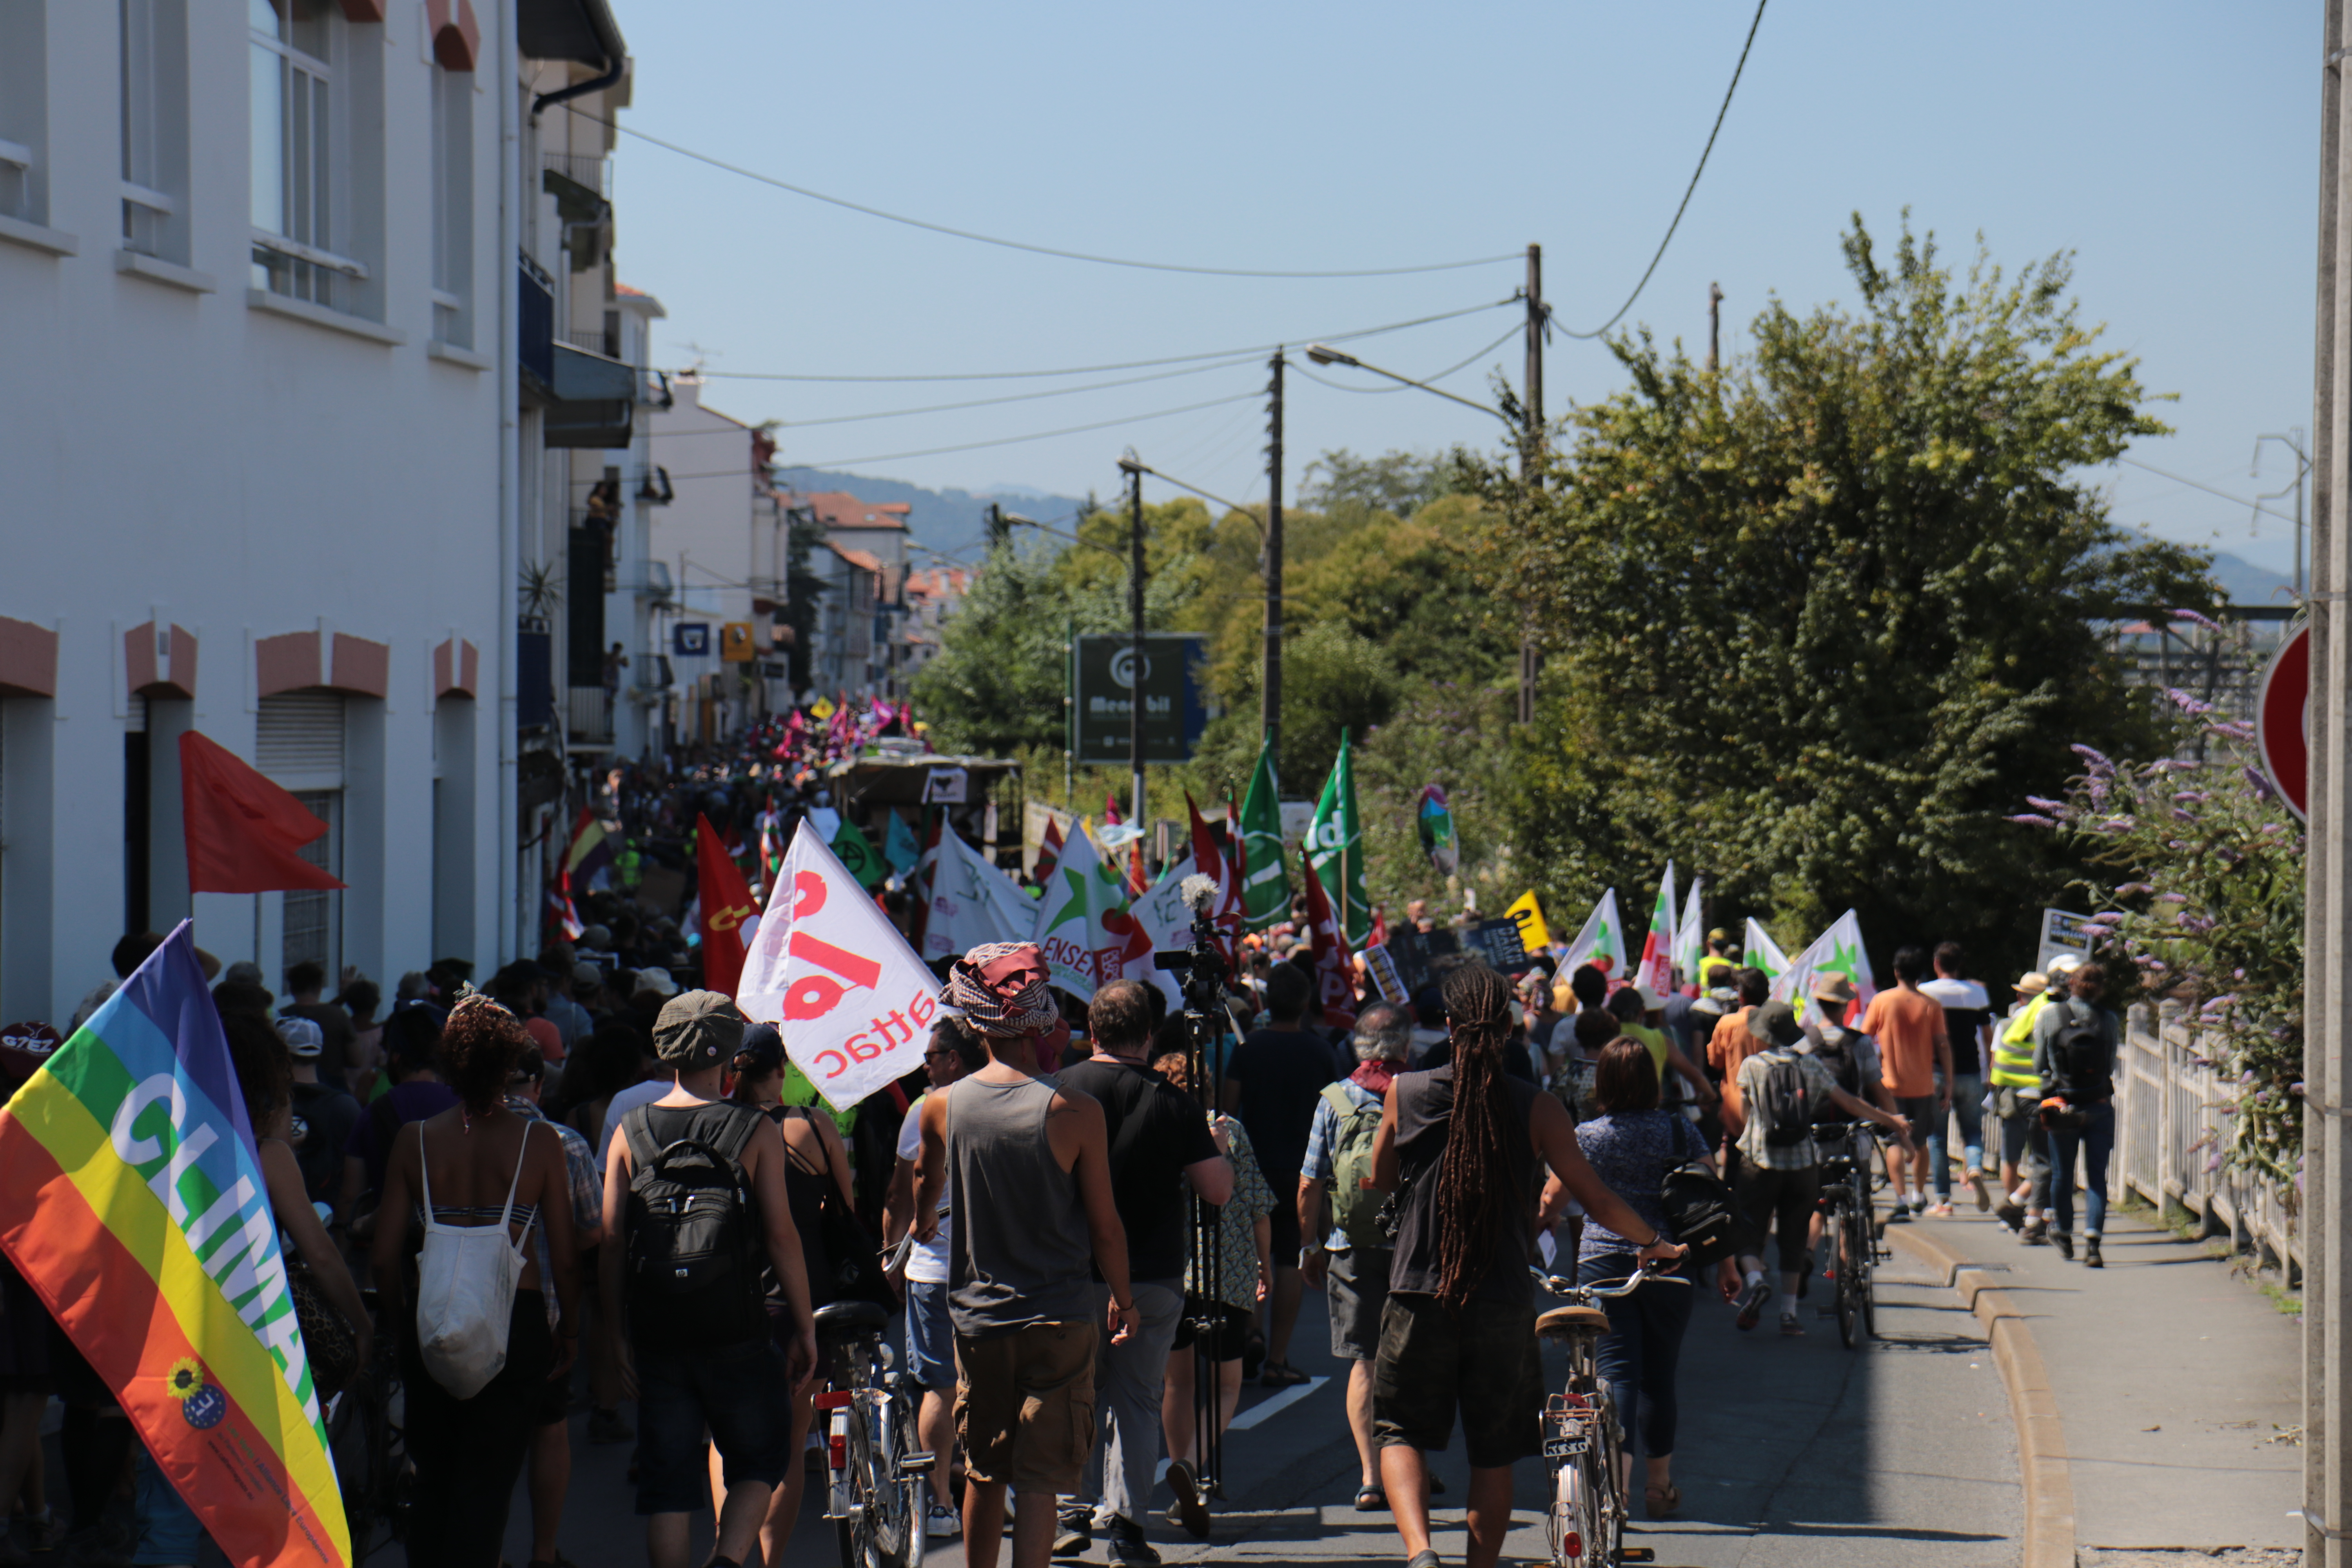 Des militant-es basques manifestaient leur soutien aux réfugiés dans le défilé officiel des organisations du contre-sommet du G7, entre Hendaye et Irun. Photographie : Pierre-Olivier Chaput pour Radio Parleur